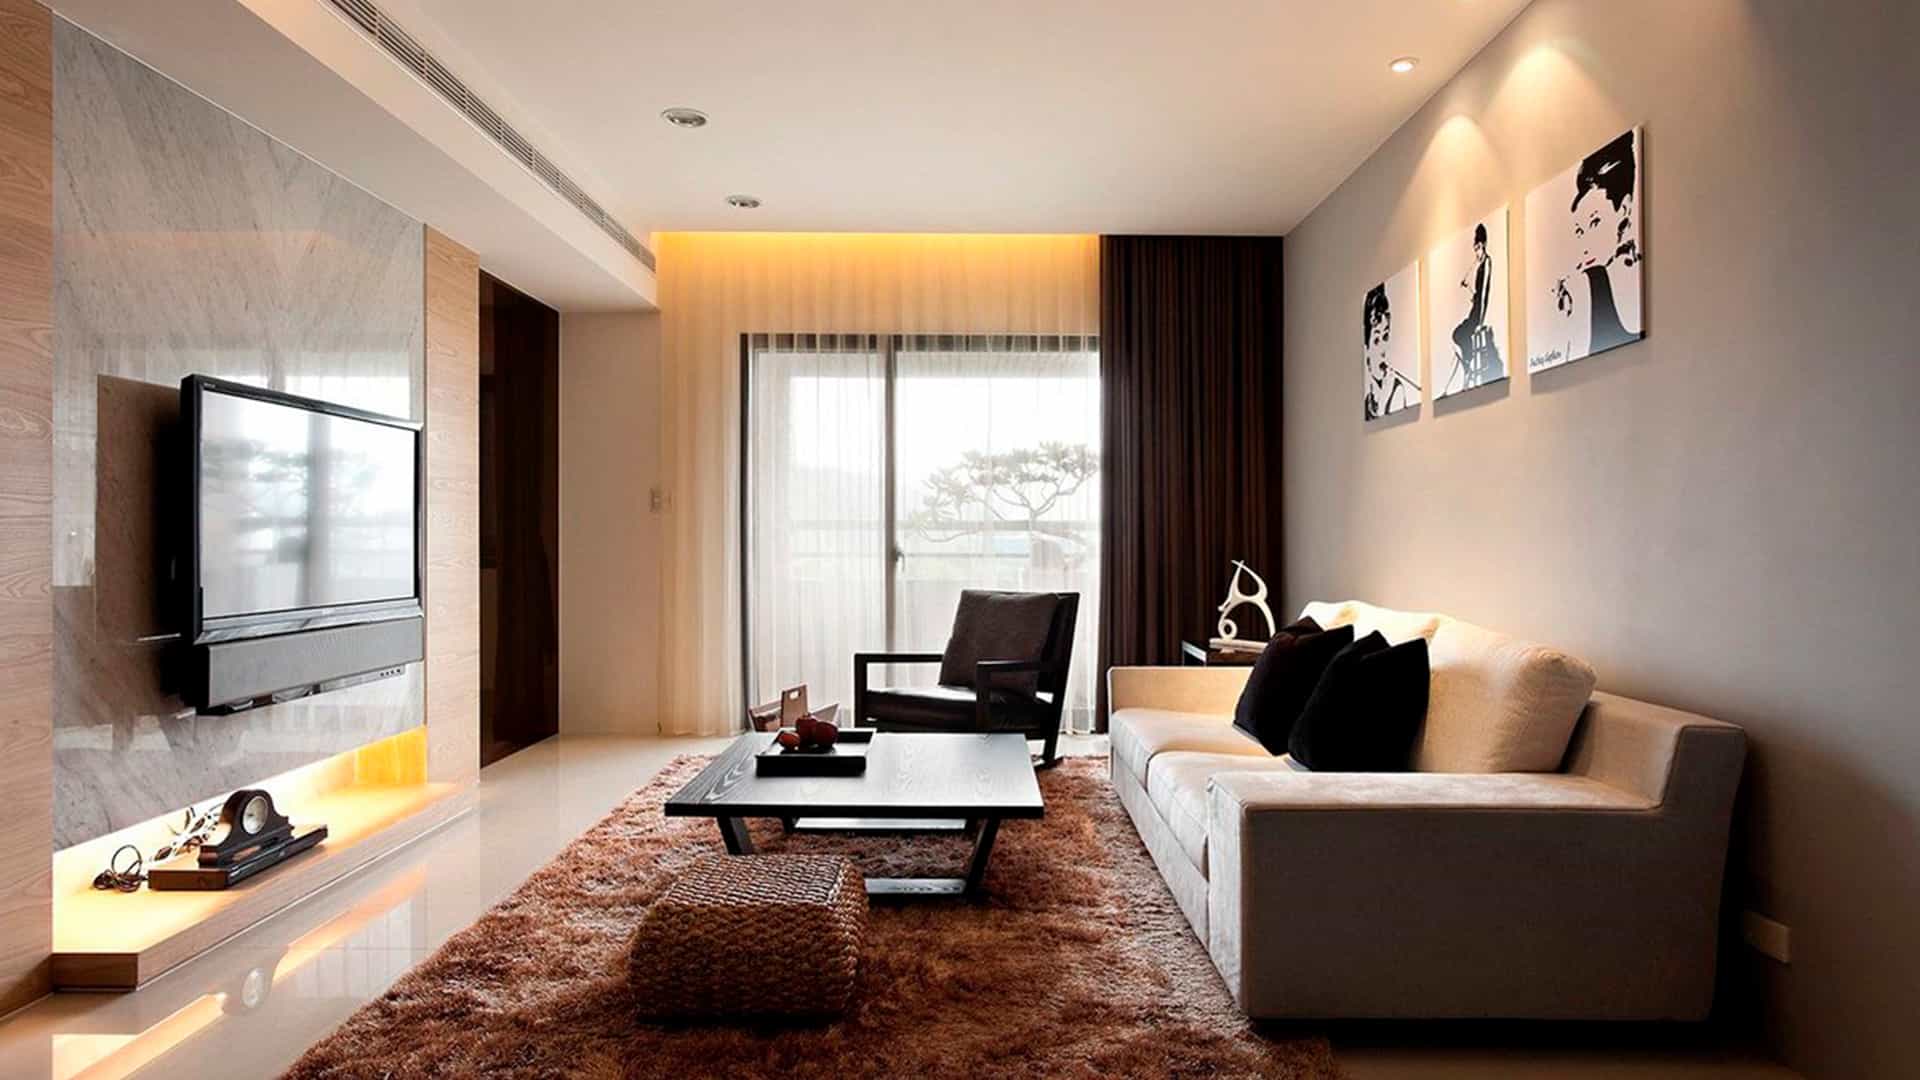 02 01 Salon moderno con amplios muebles Ikea y Televisor de pantalla plana